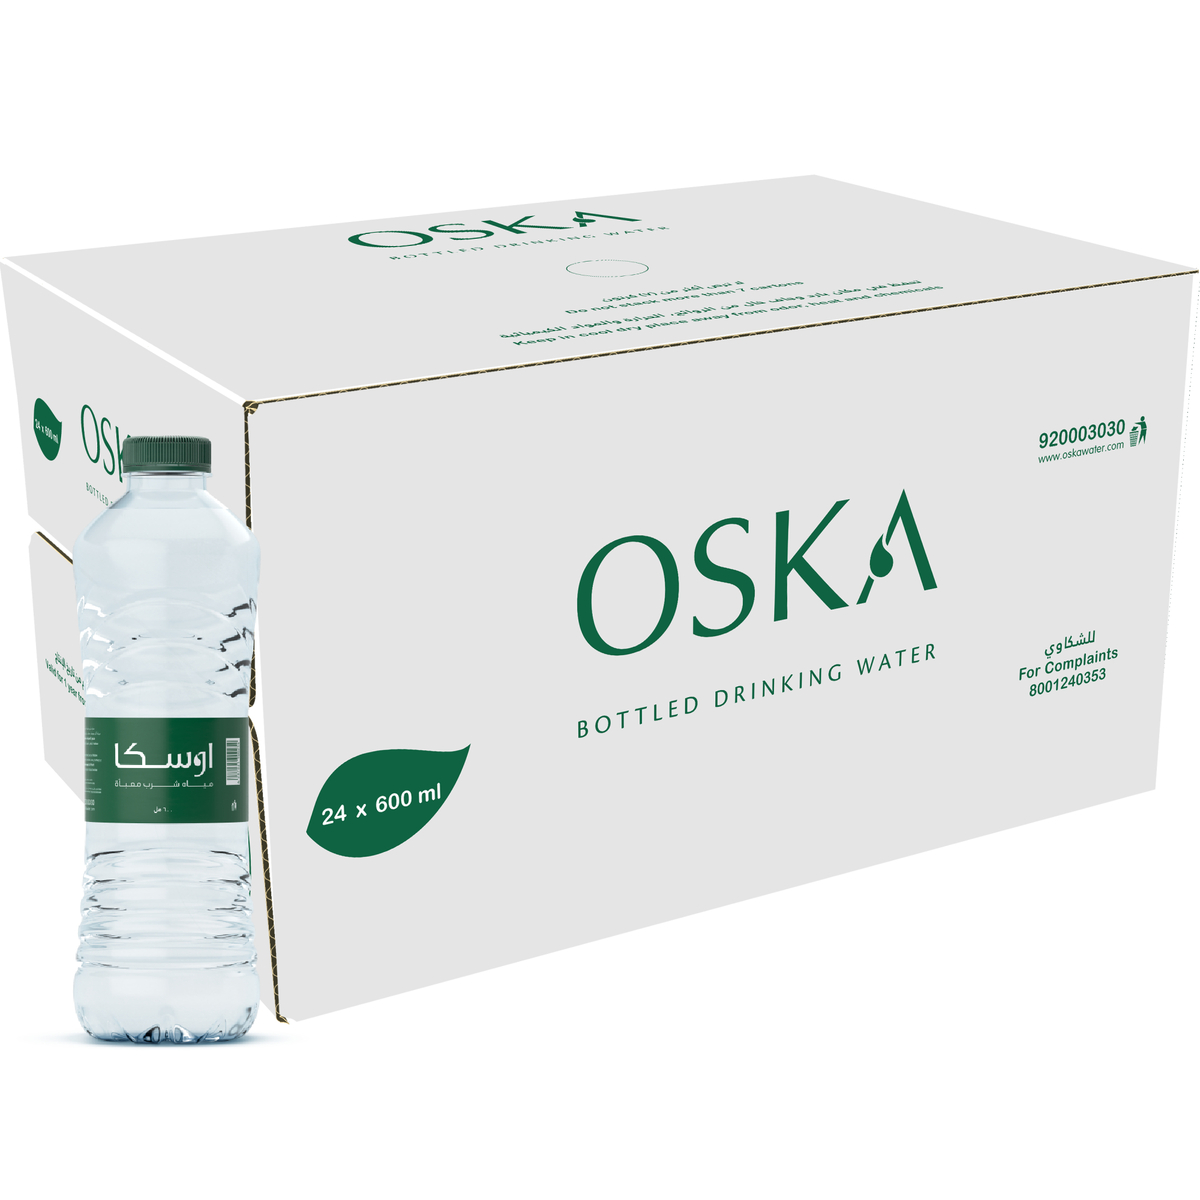 Oska Bottled Drinking Water 600ml